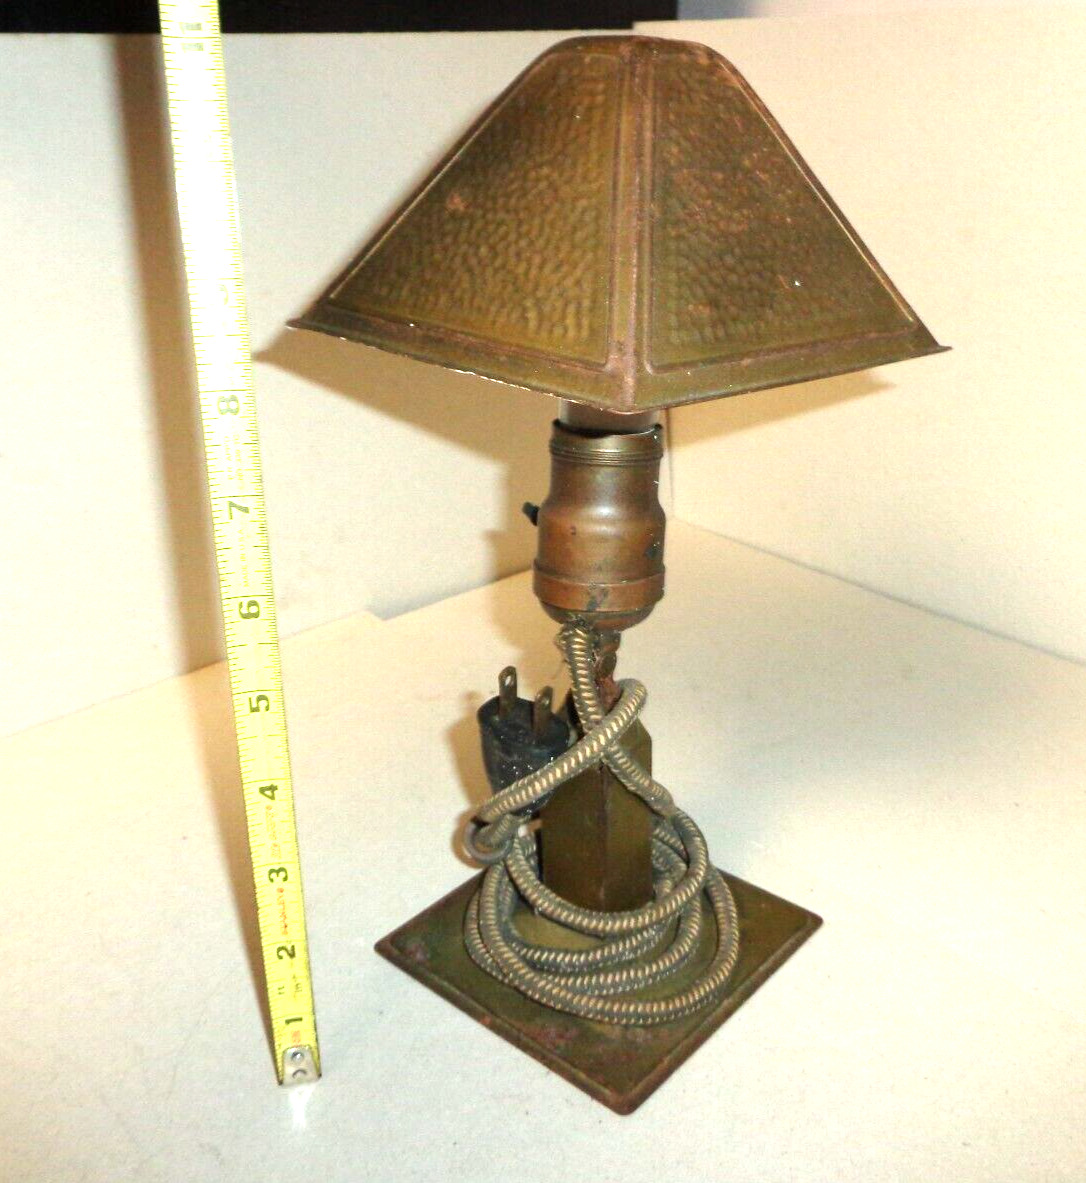 VTG ANTIQUE HAMMERED LOOK SHADE GREIST Desk Lamp PIVOT Adjustable WORKING